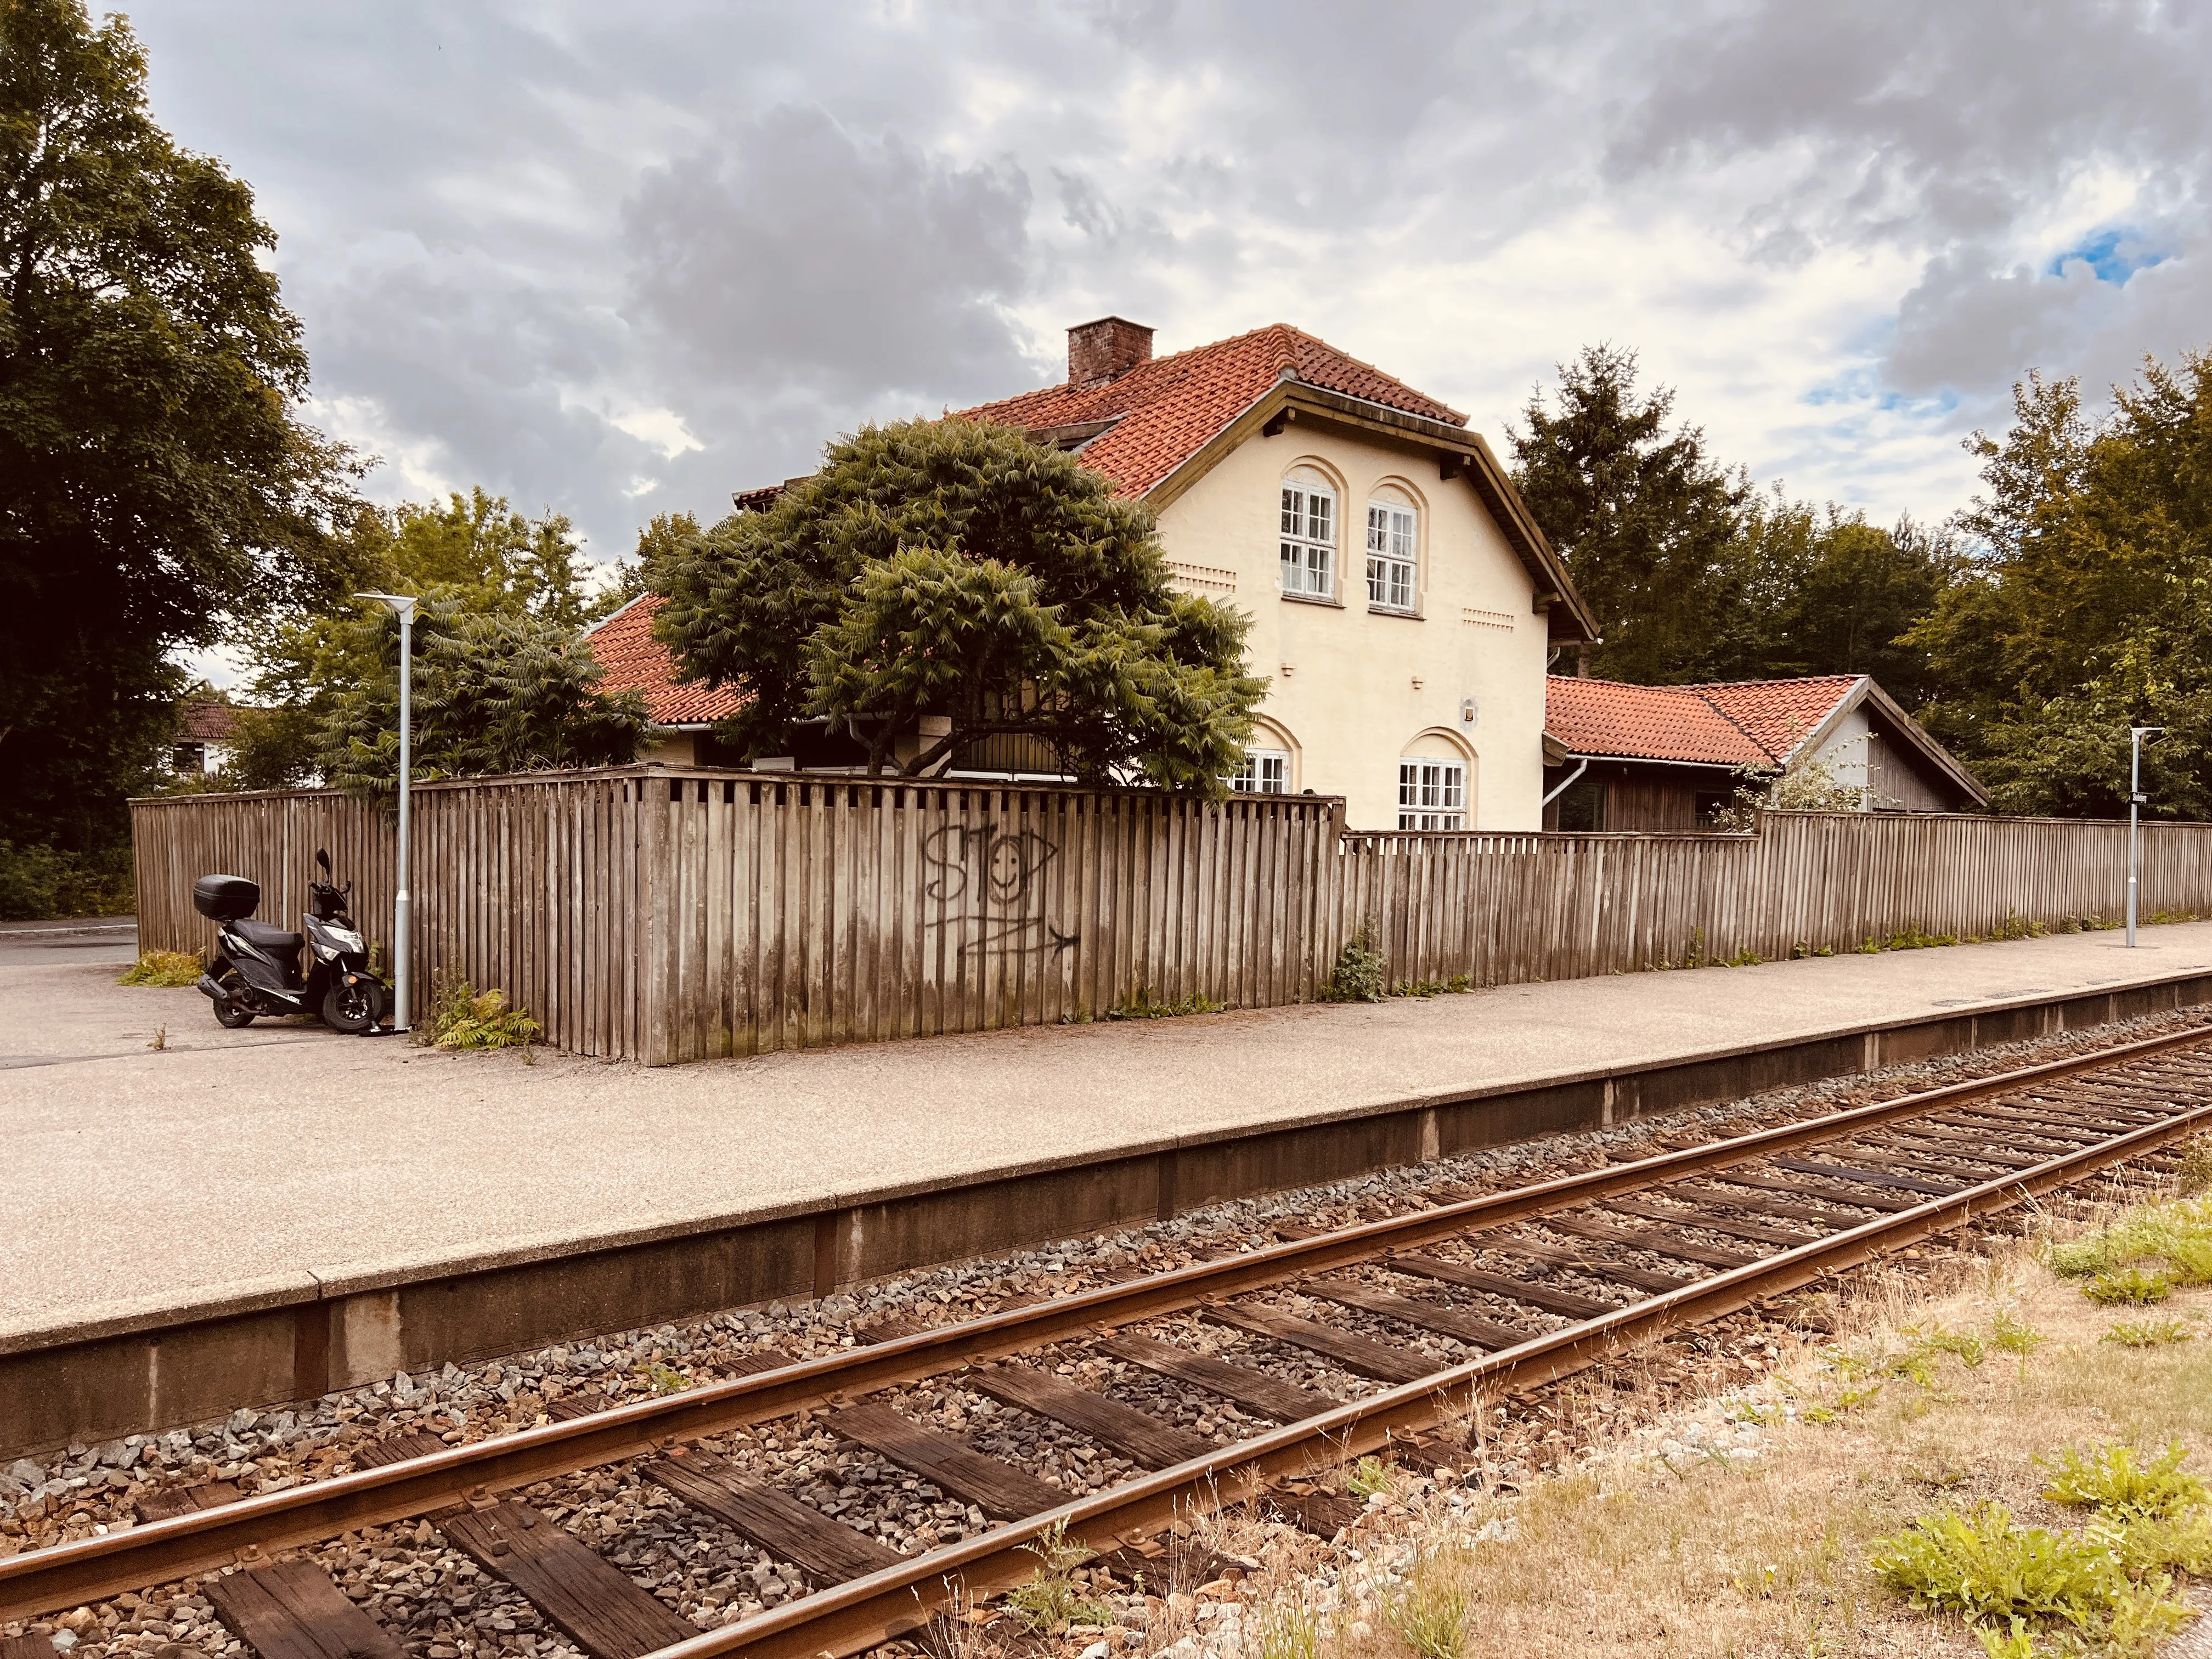 Billede af Skellebjerg Station.